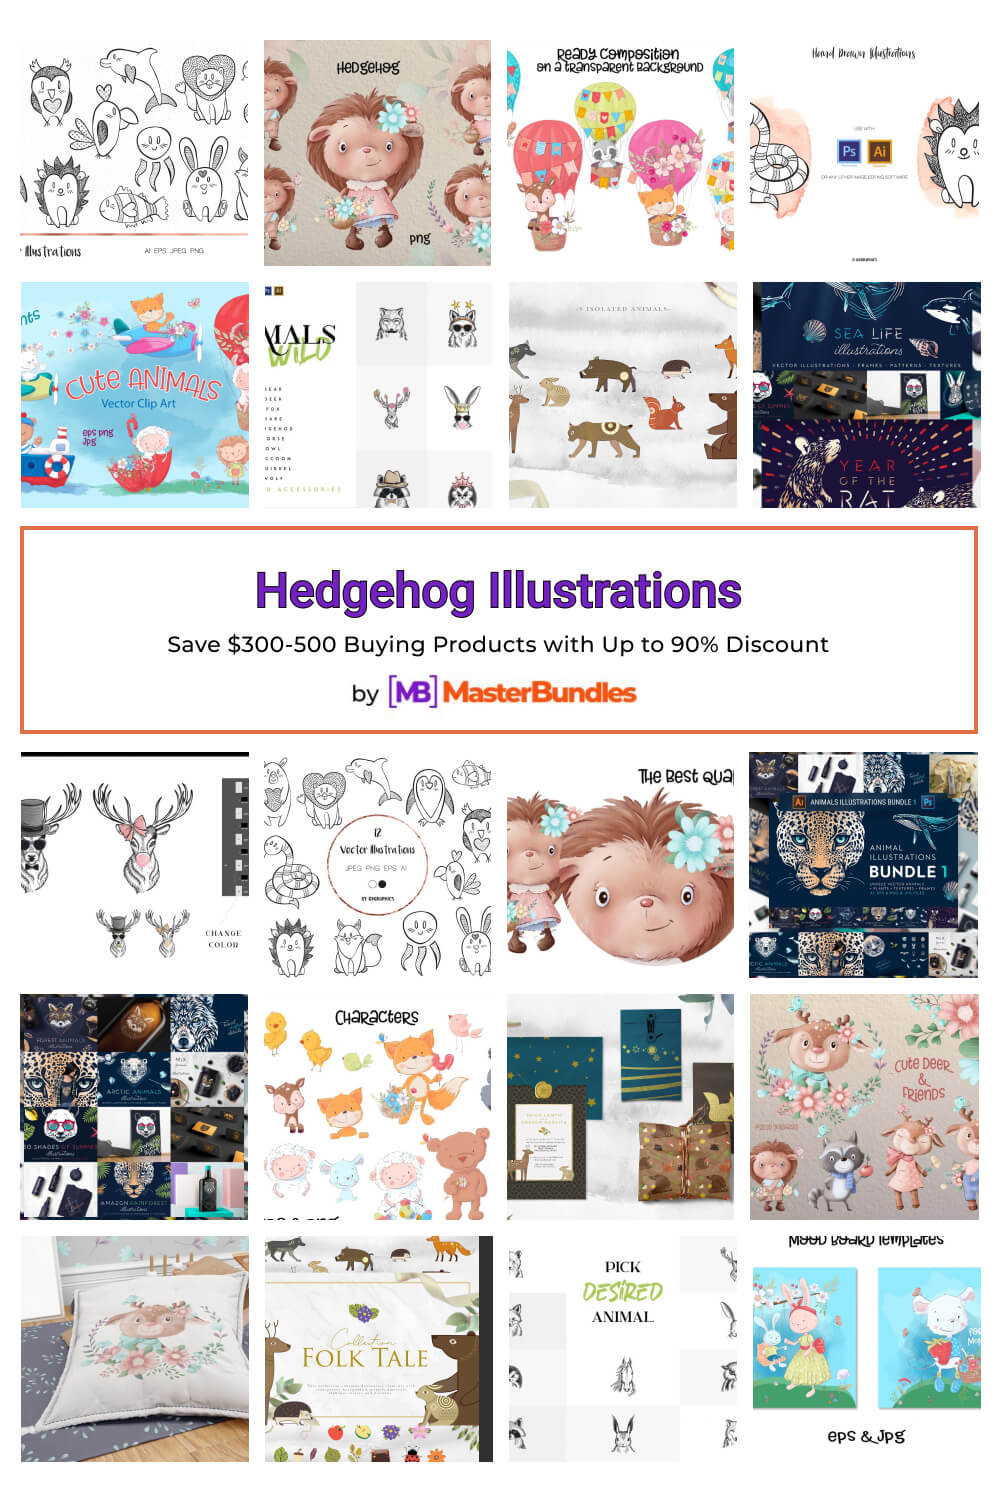 hedgehog illustrations pinterest image.